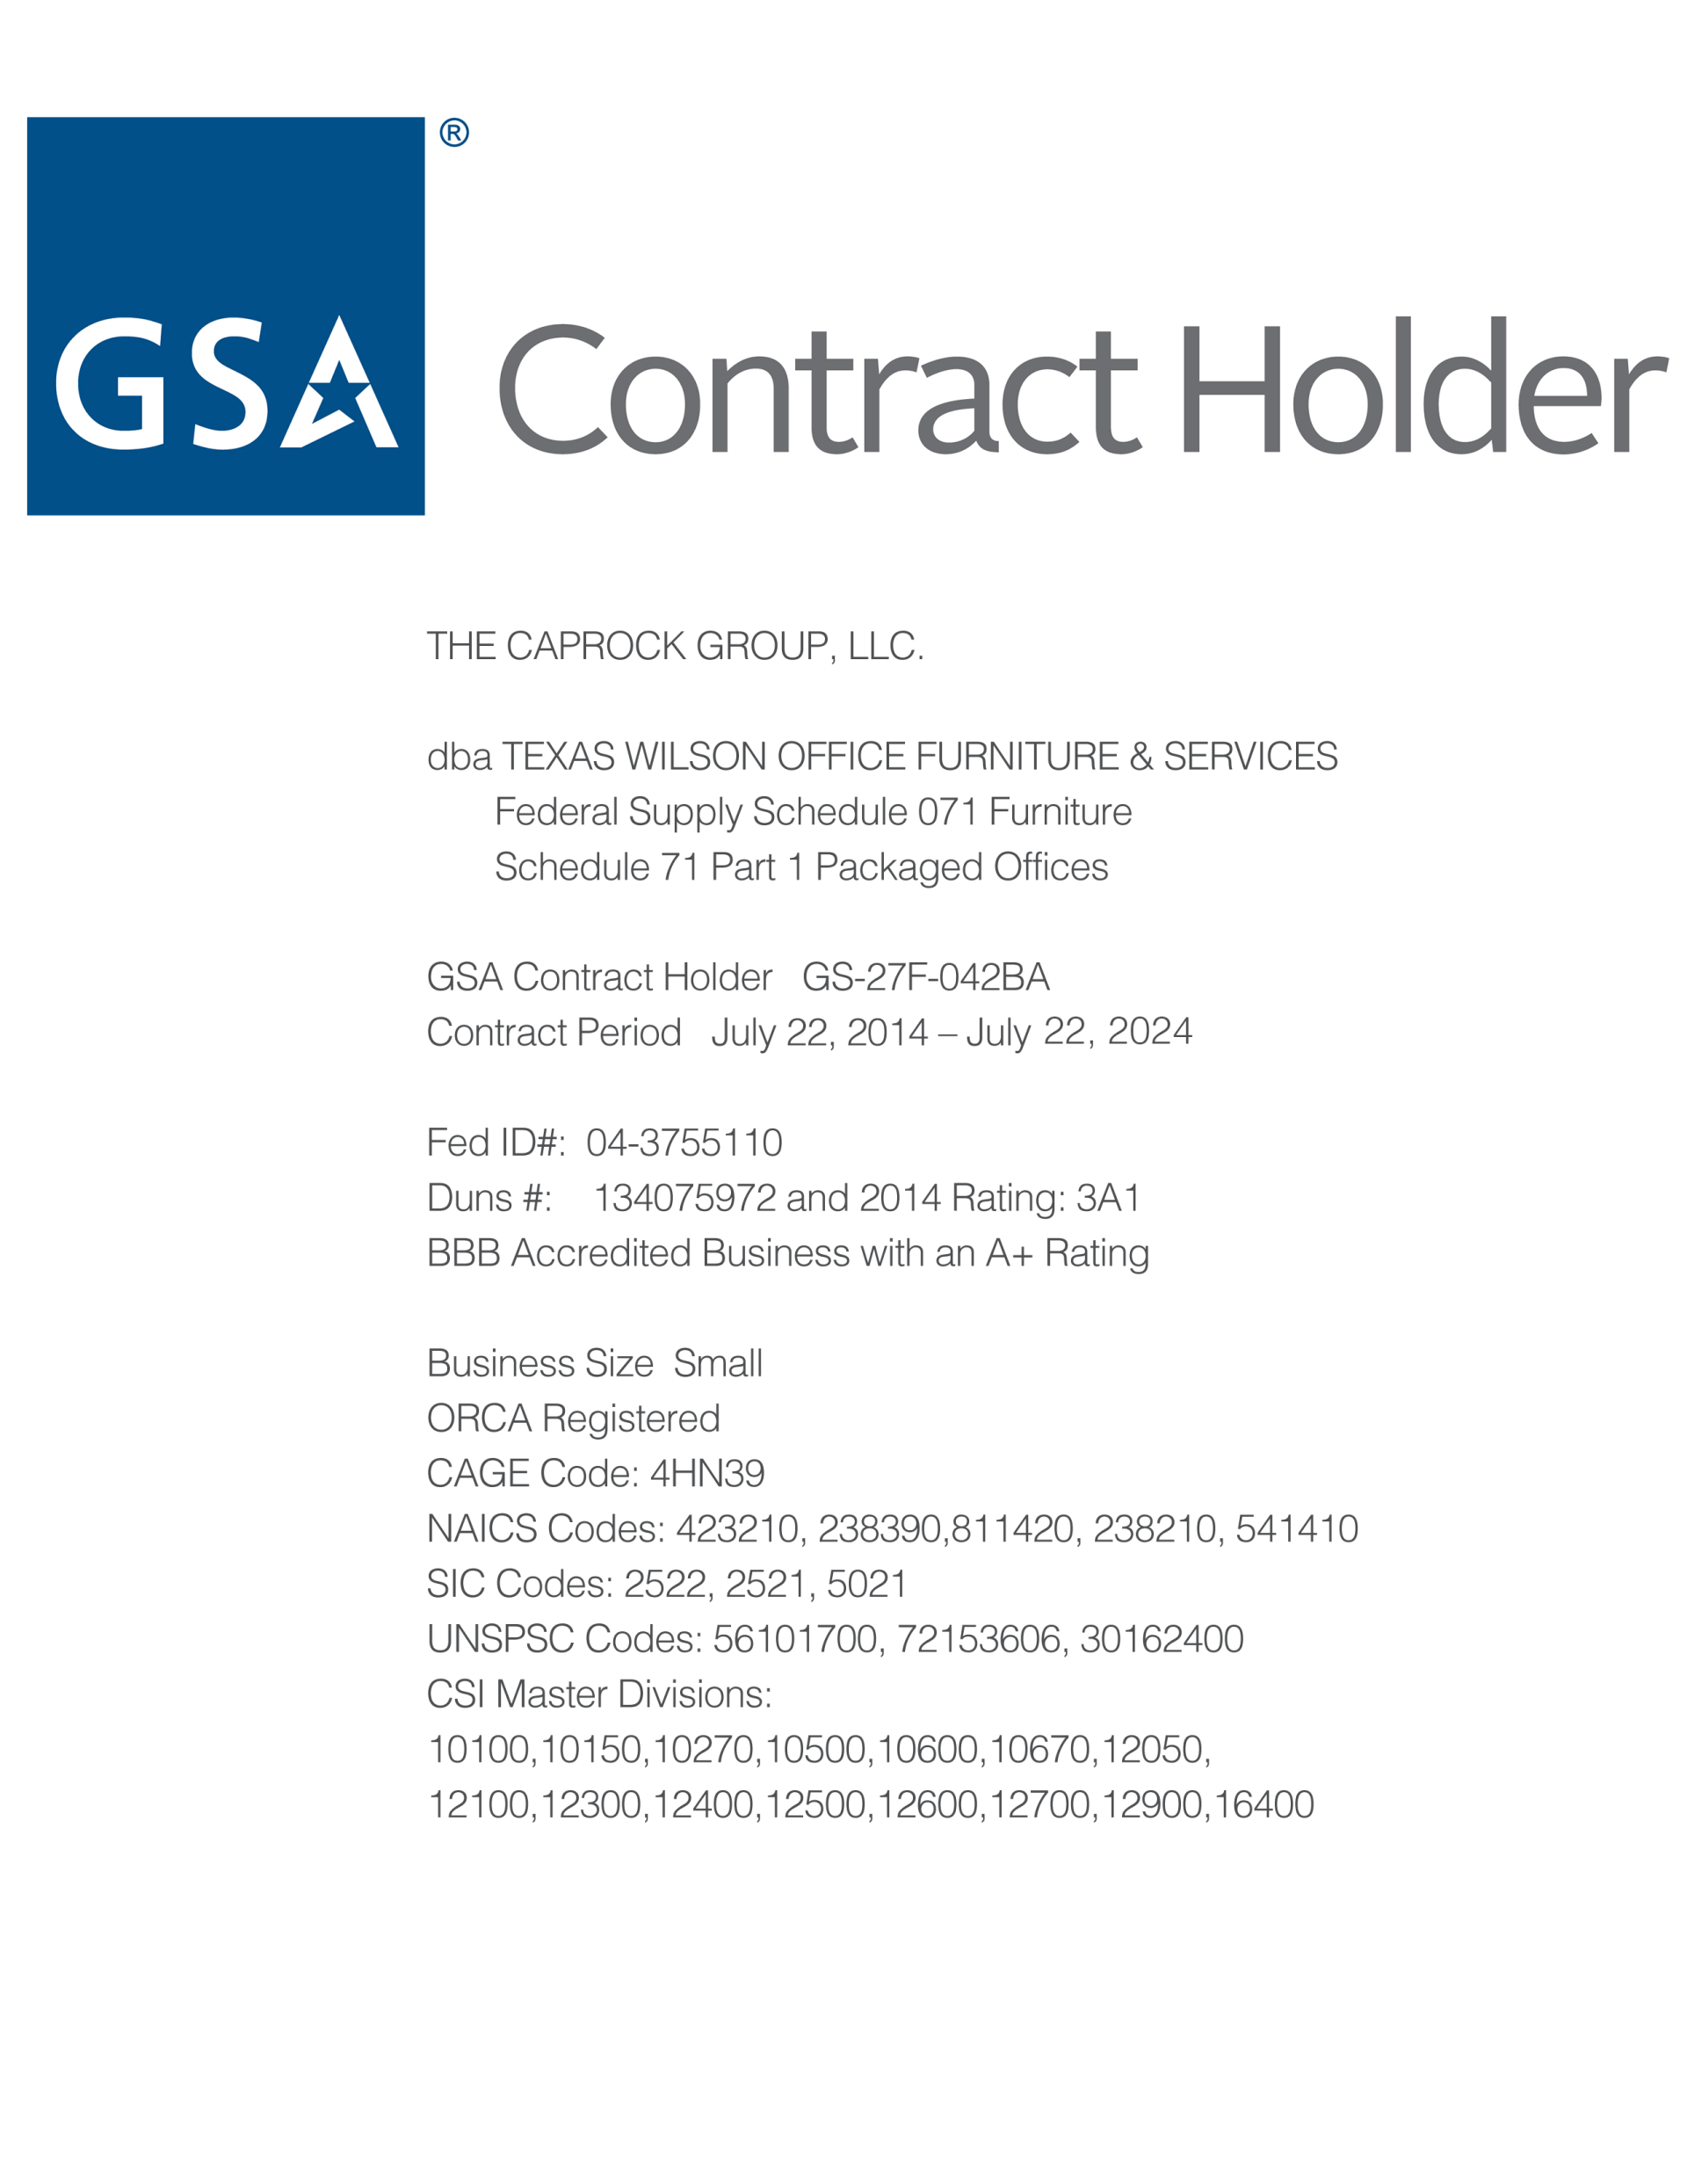 GSA Contract Holder — San Antonio, TX — Texas Wilson